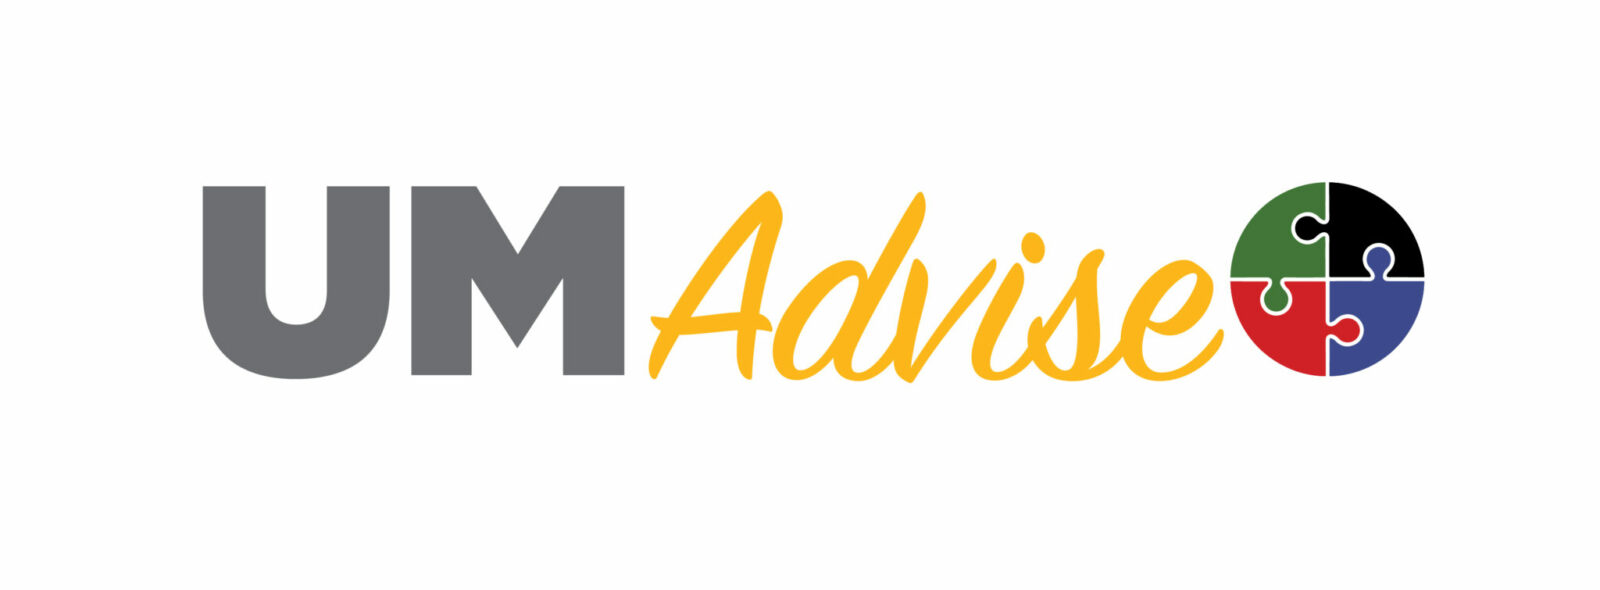 UM Advise logo